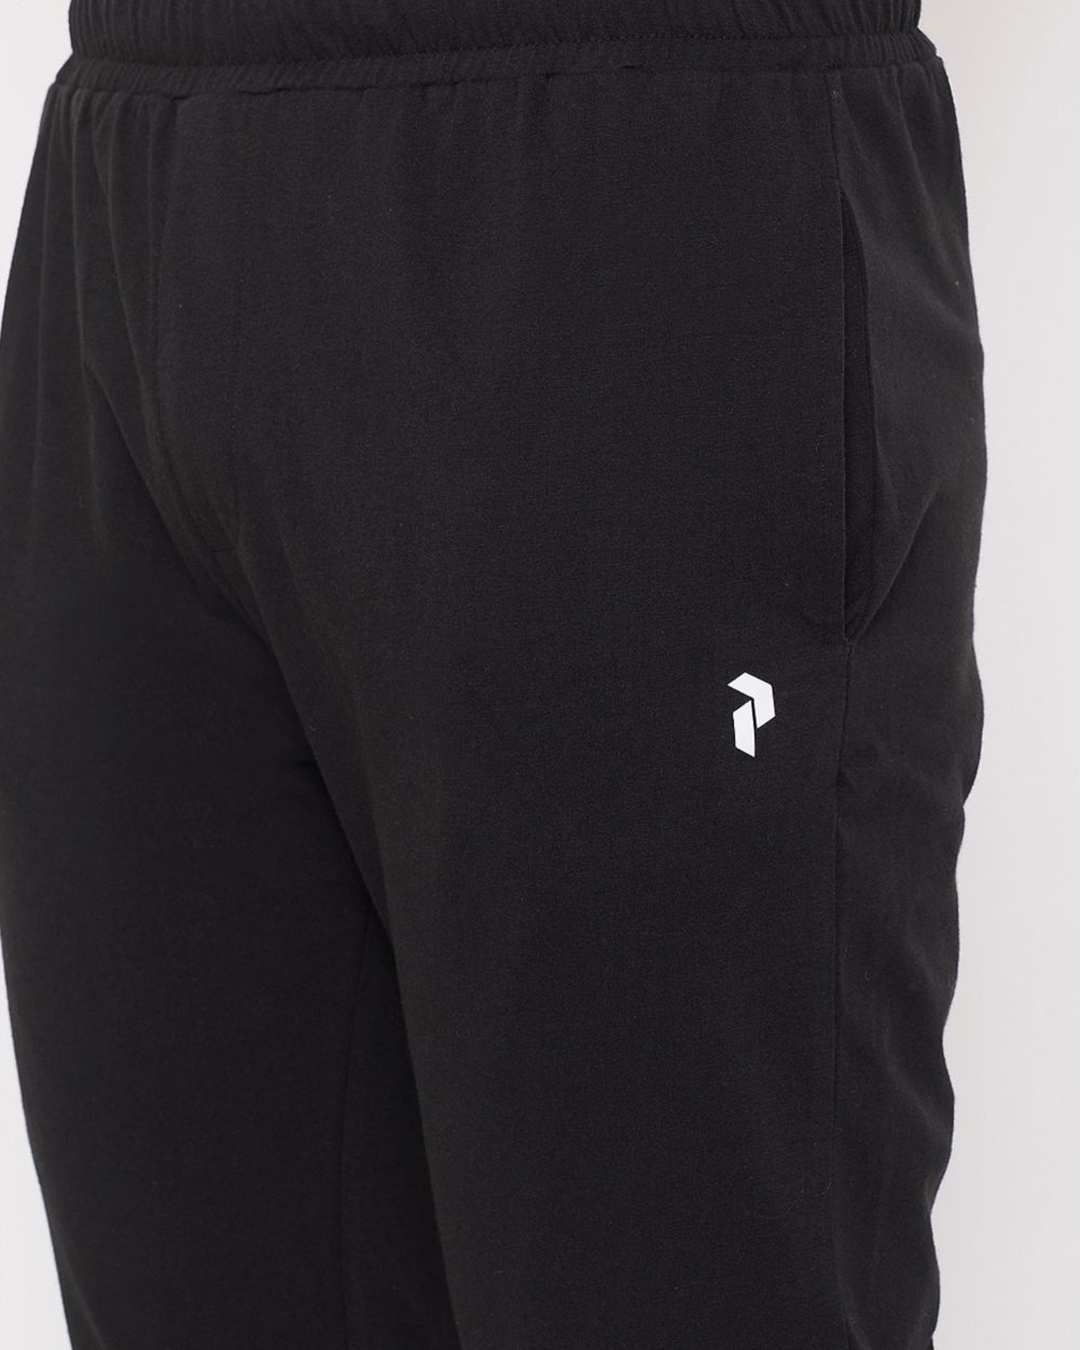 Shop Men's Black Cotton Track Pants